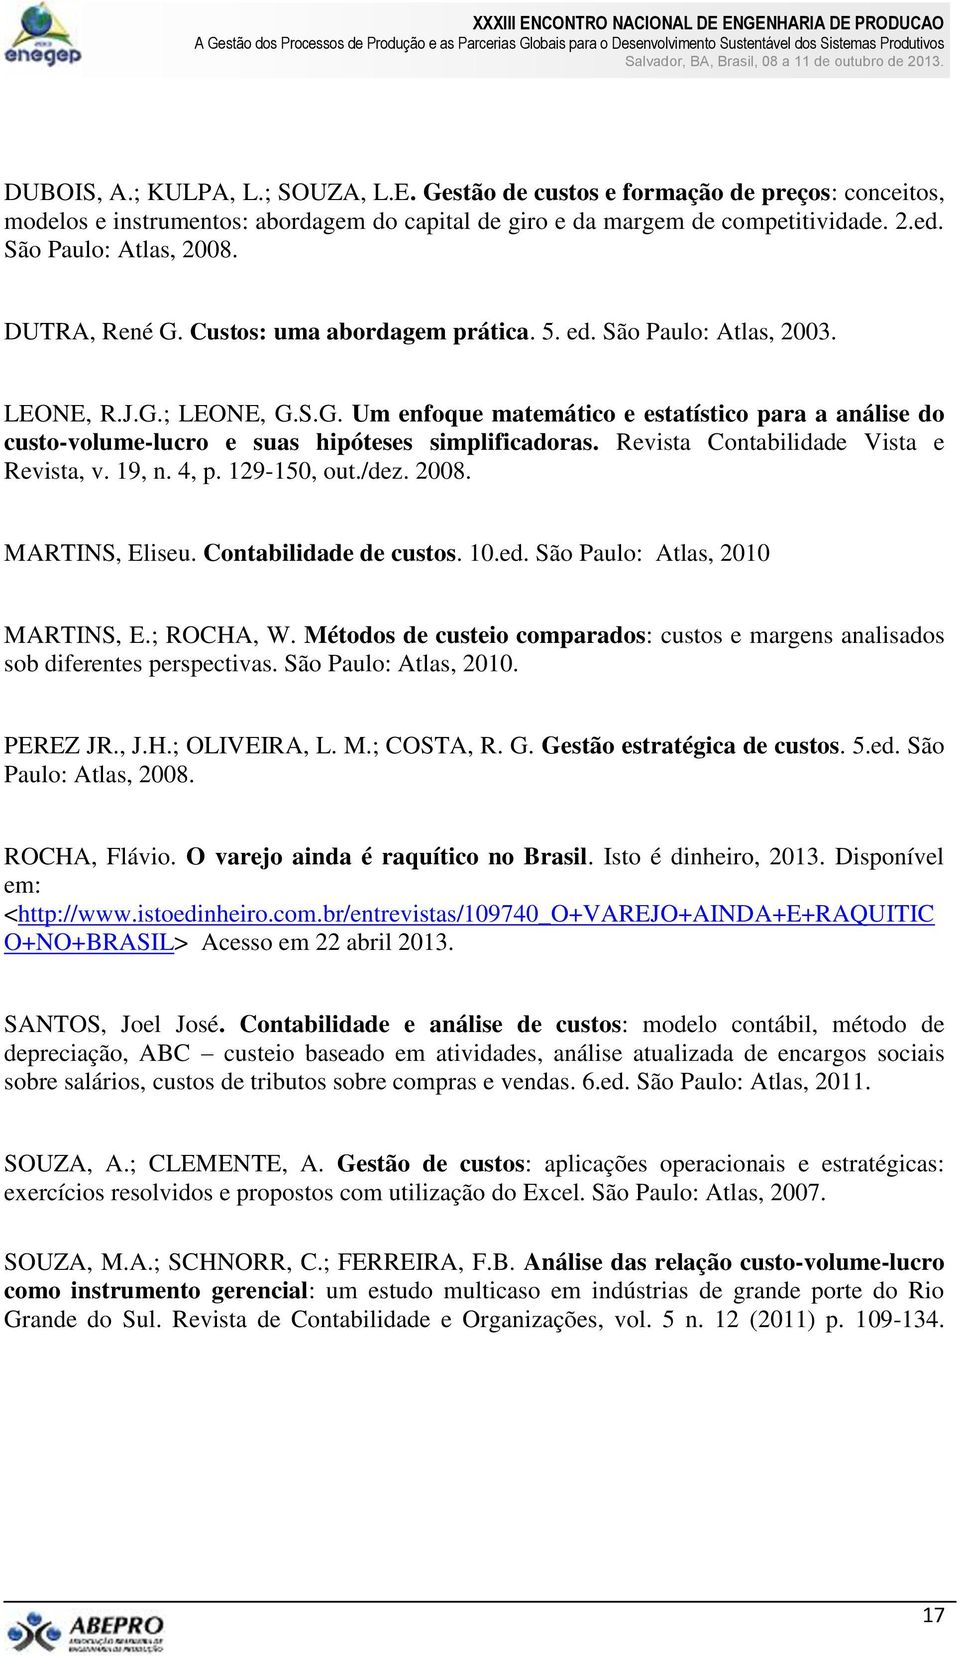 Revista Contabilidade Vista e Revista, v. 19, n. 4, p. 129-150, out./dez. 2008. MARTINS, Eliseu. Contabilidade de custos. 10.ed. São Paulo: Atlas, 2010 MARTINS, E.; ROCHA, W.